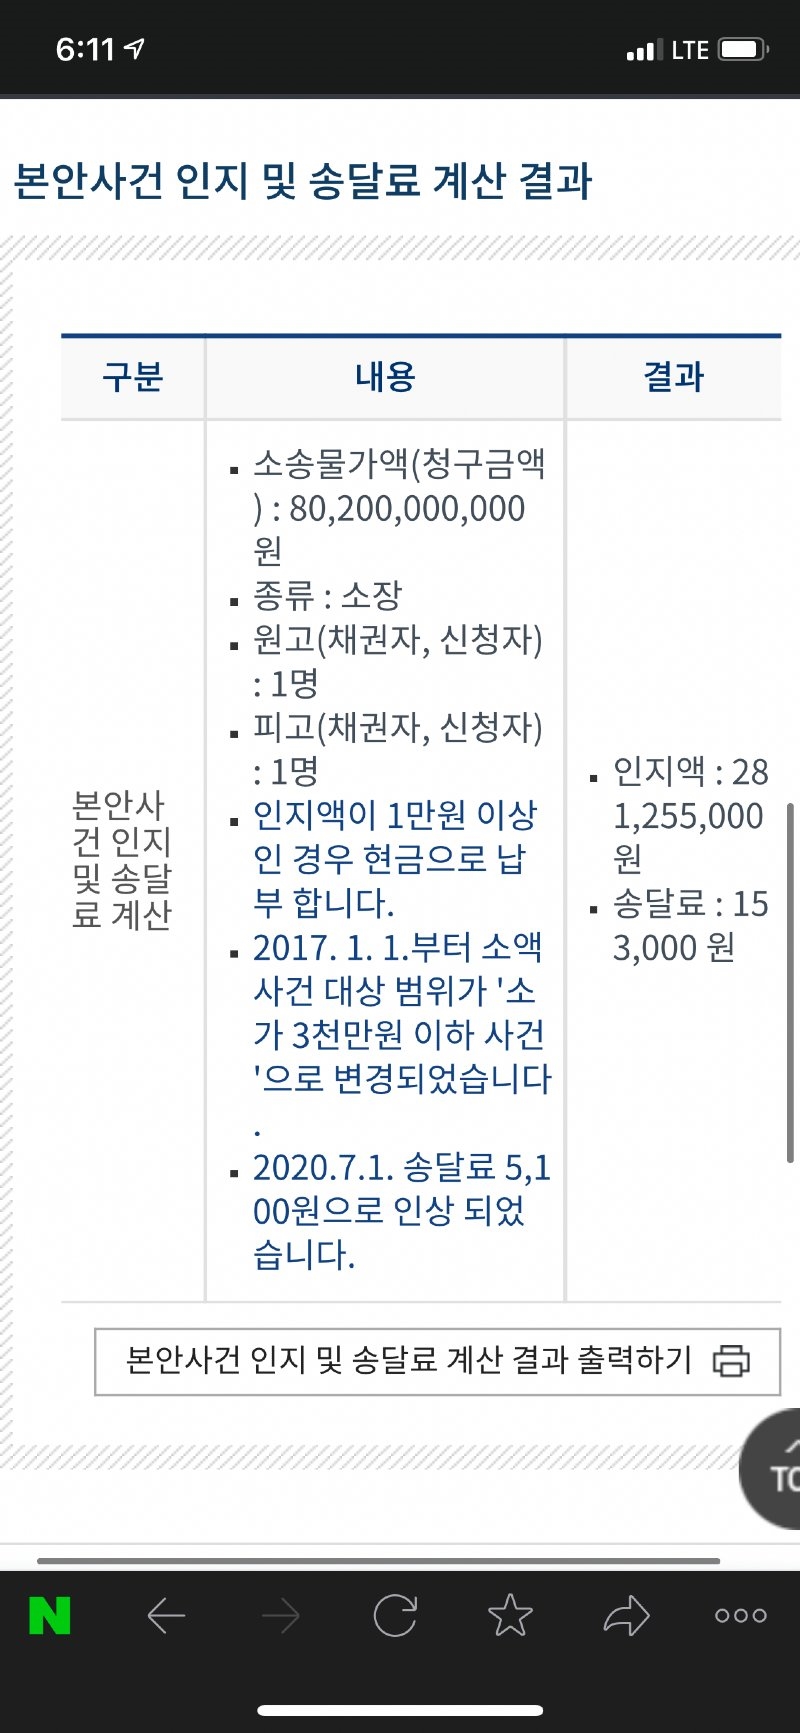 온라인 커뮤니티와 SNS를 중심으로 회자되는 '윤서인 소송 금액 802억' 게시물